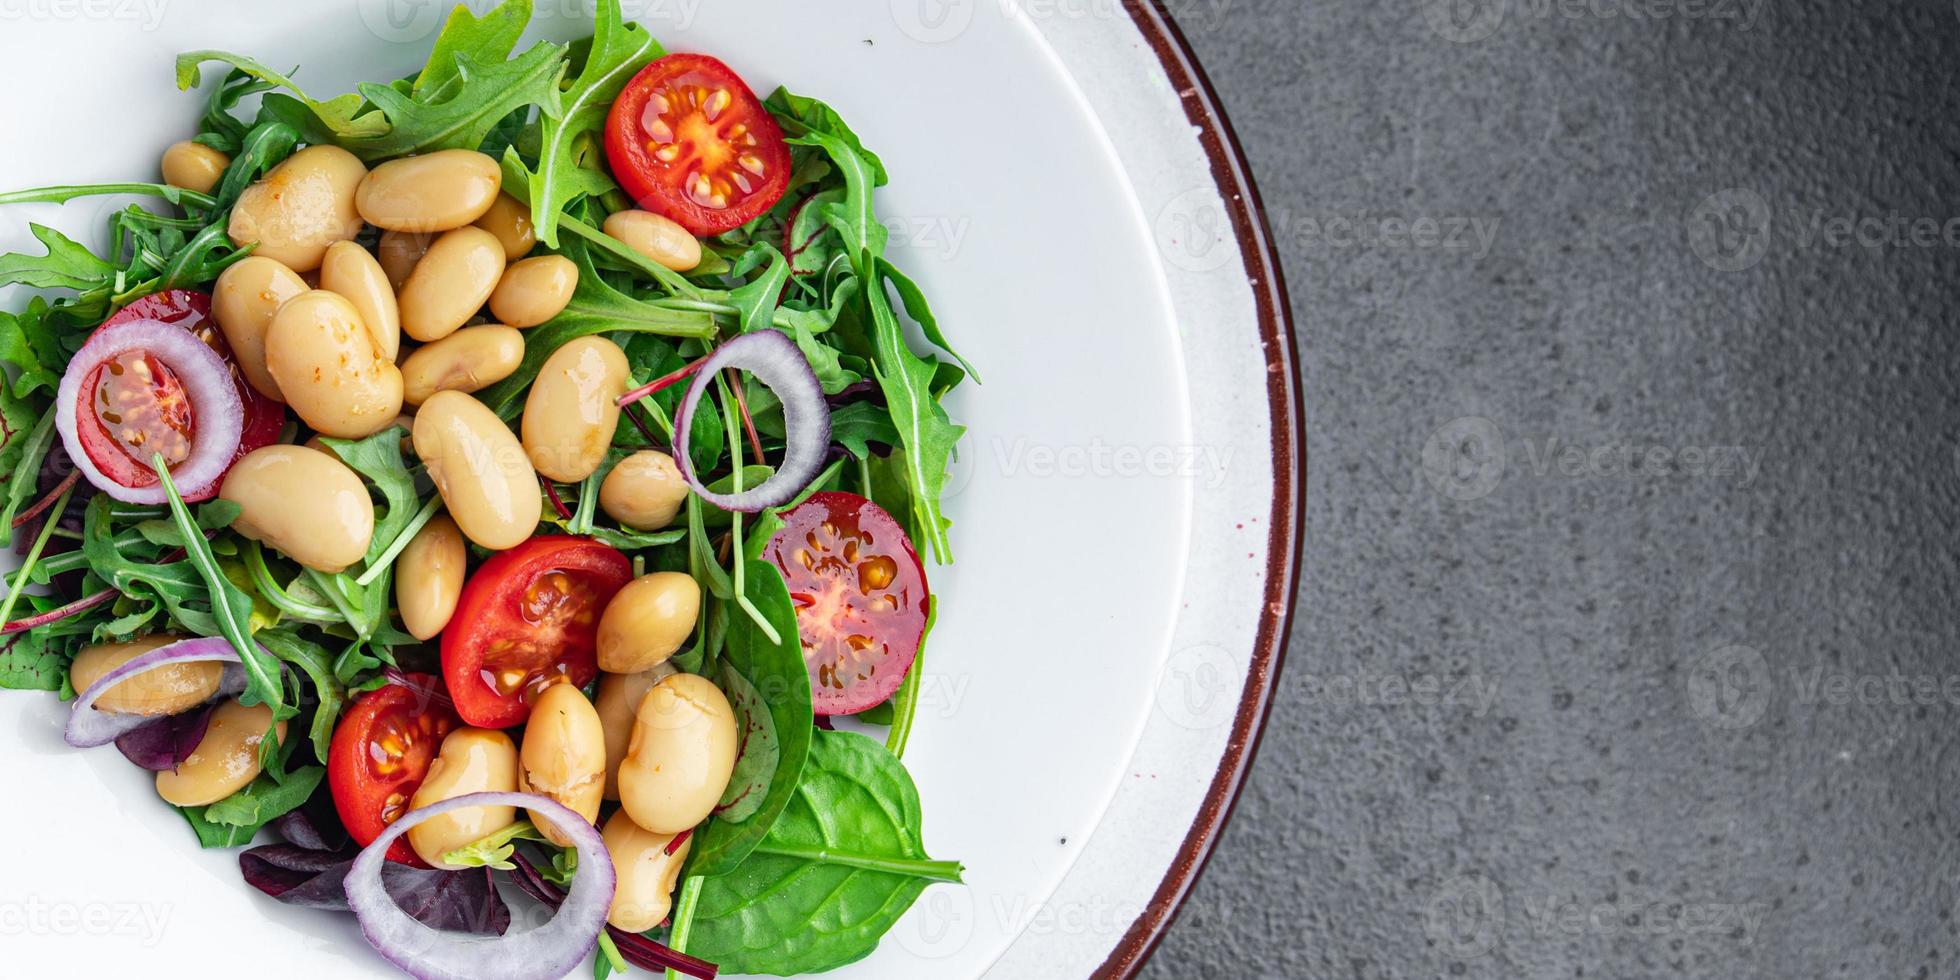 Salade de haricots tomate, oignon, feuilles de laitue mélanger des repas de légumes frais et sains collation diététique sur la table copie espace arrière-plan alimentaire photo